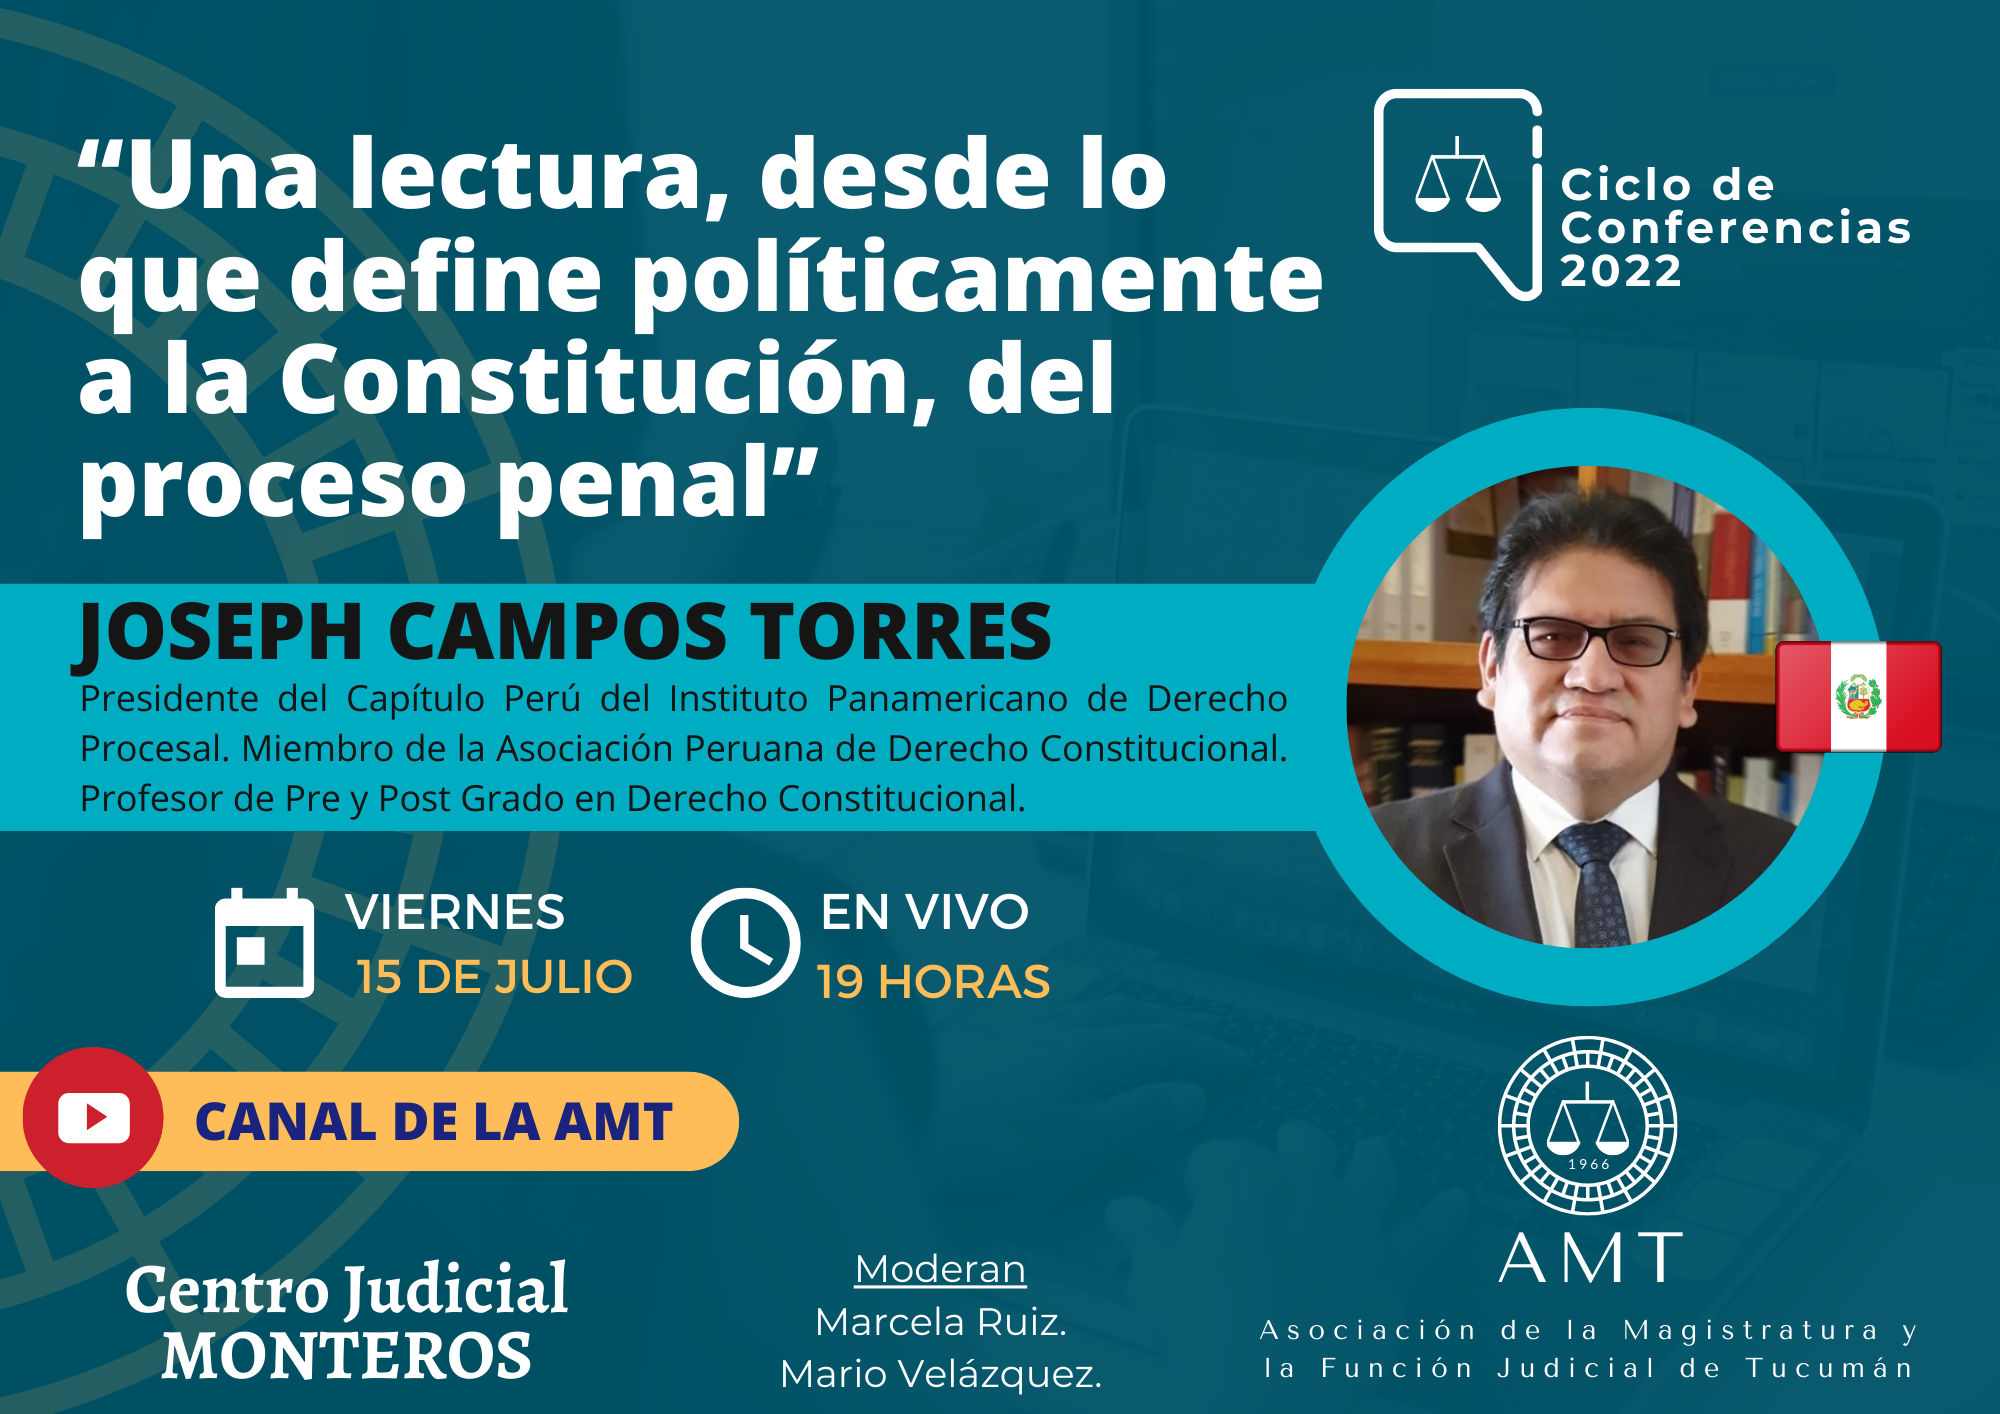 Vuelva a ver la conferencia de Joseph Campos Torres “Una lectura del proceso penal”.